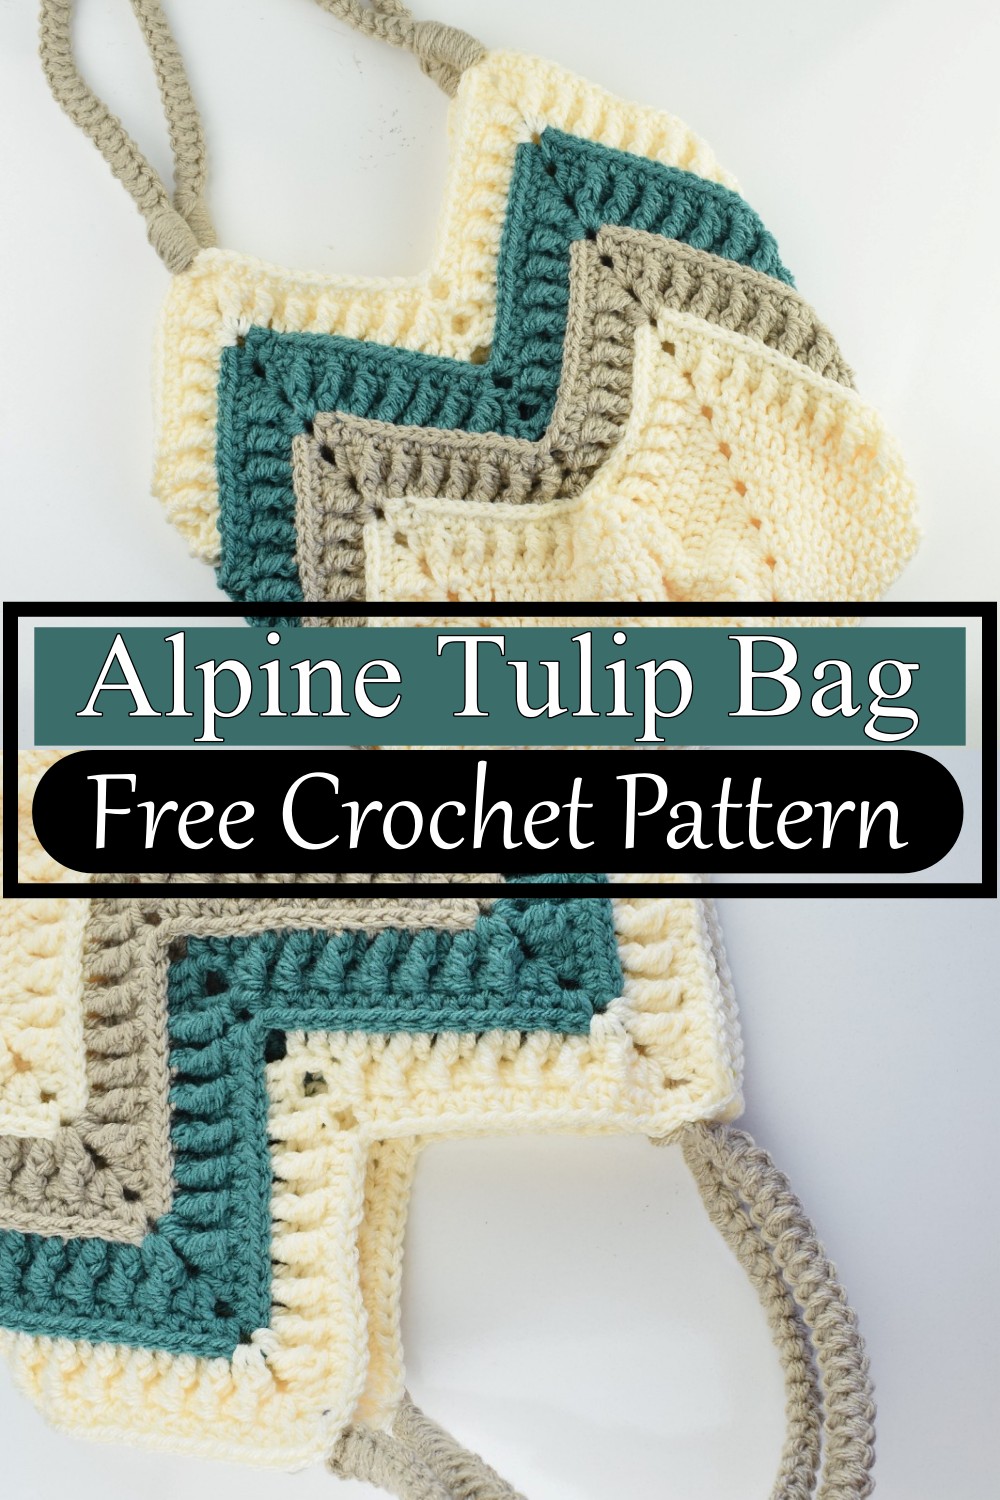 Alpine Tulip Bag